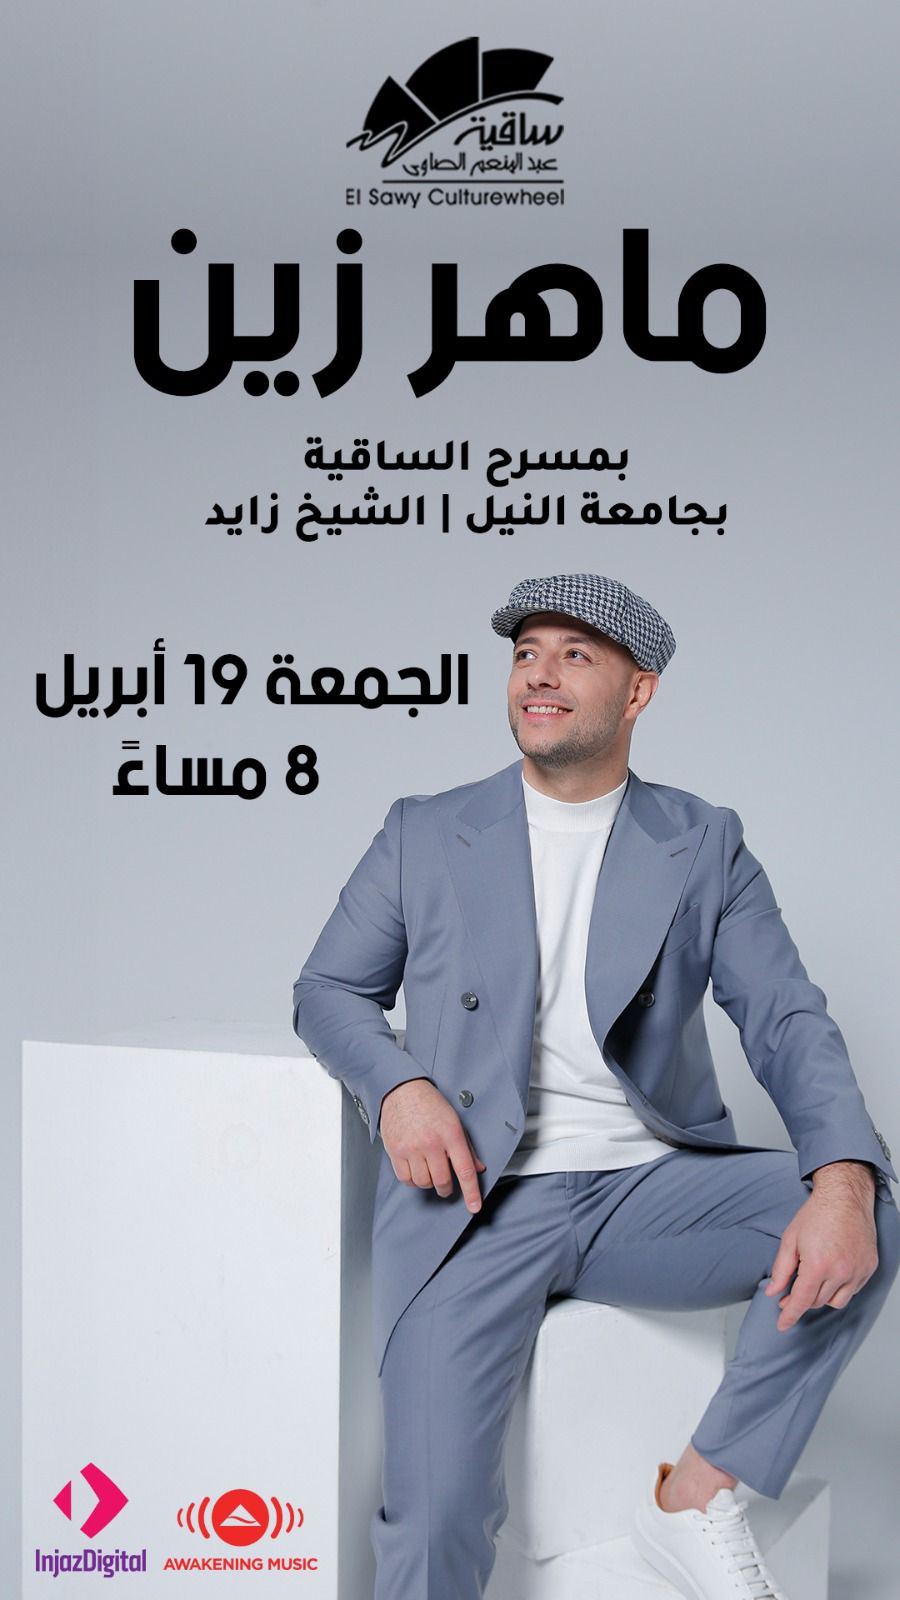 عودة ماهر زين للحفلات الجماهيرية بحفل غنائي في مصر 19 أبريل